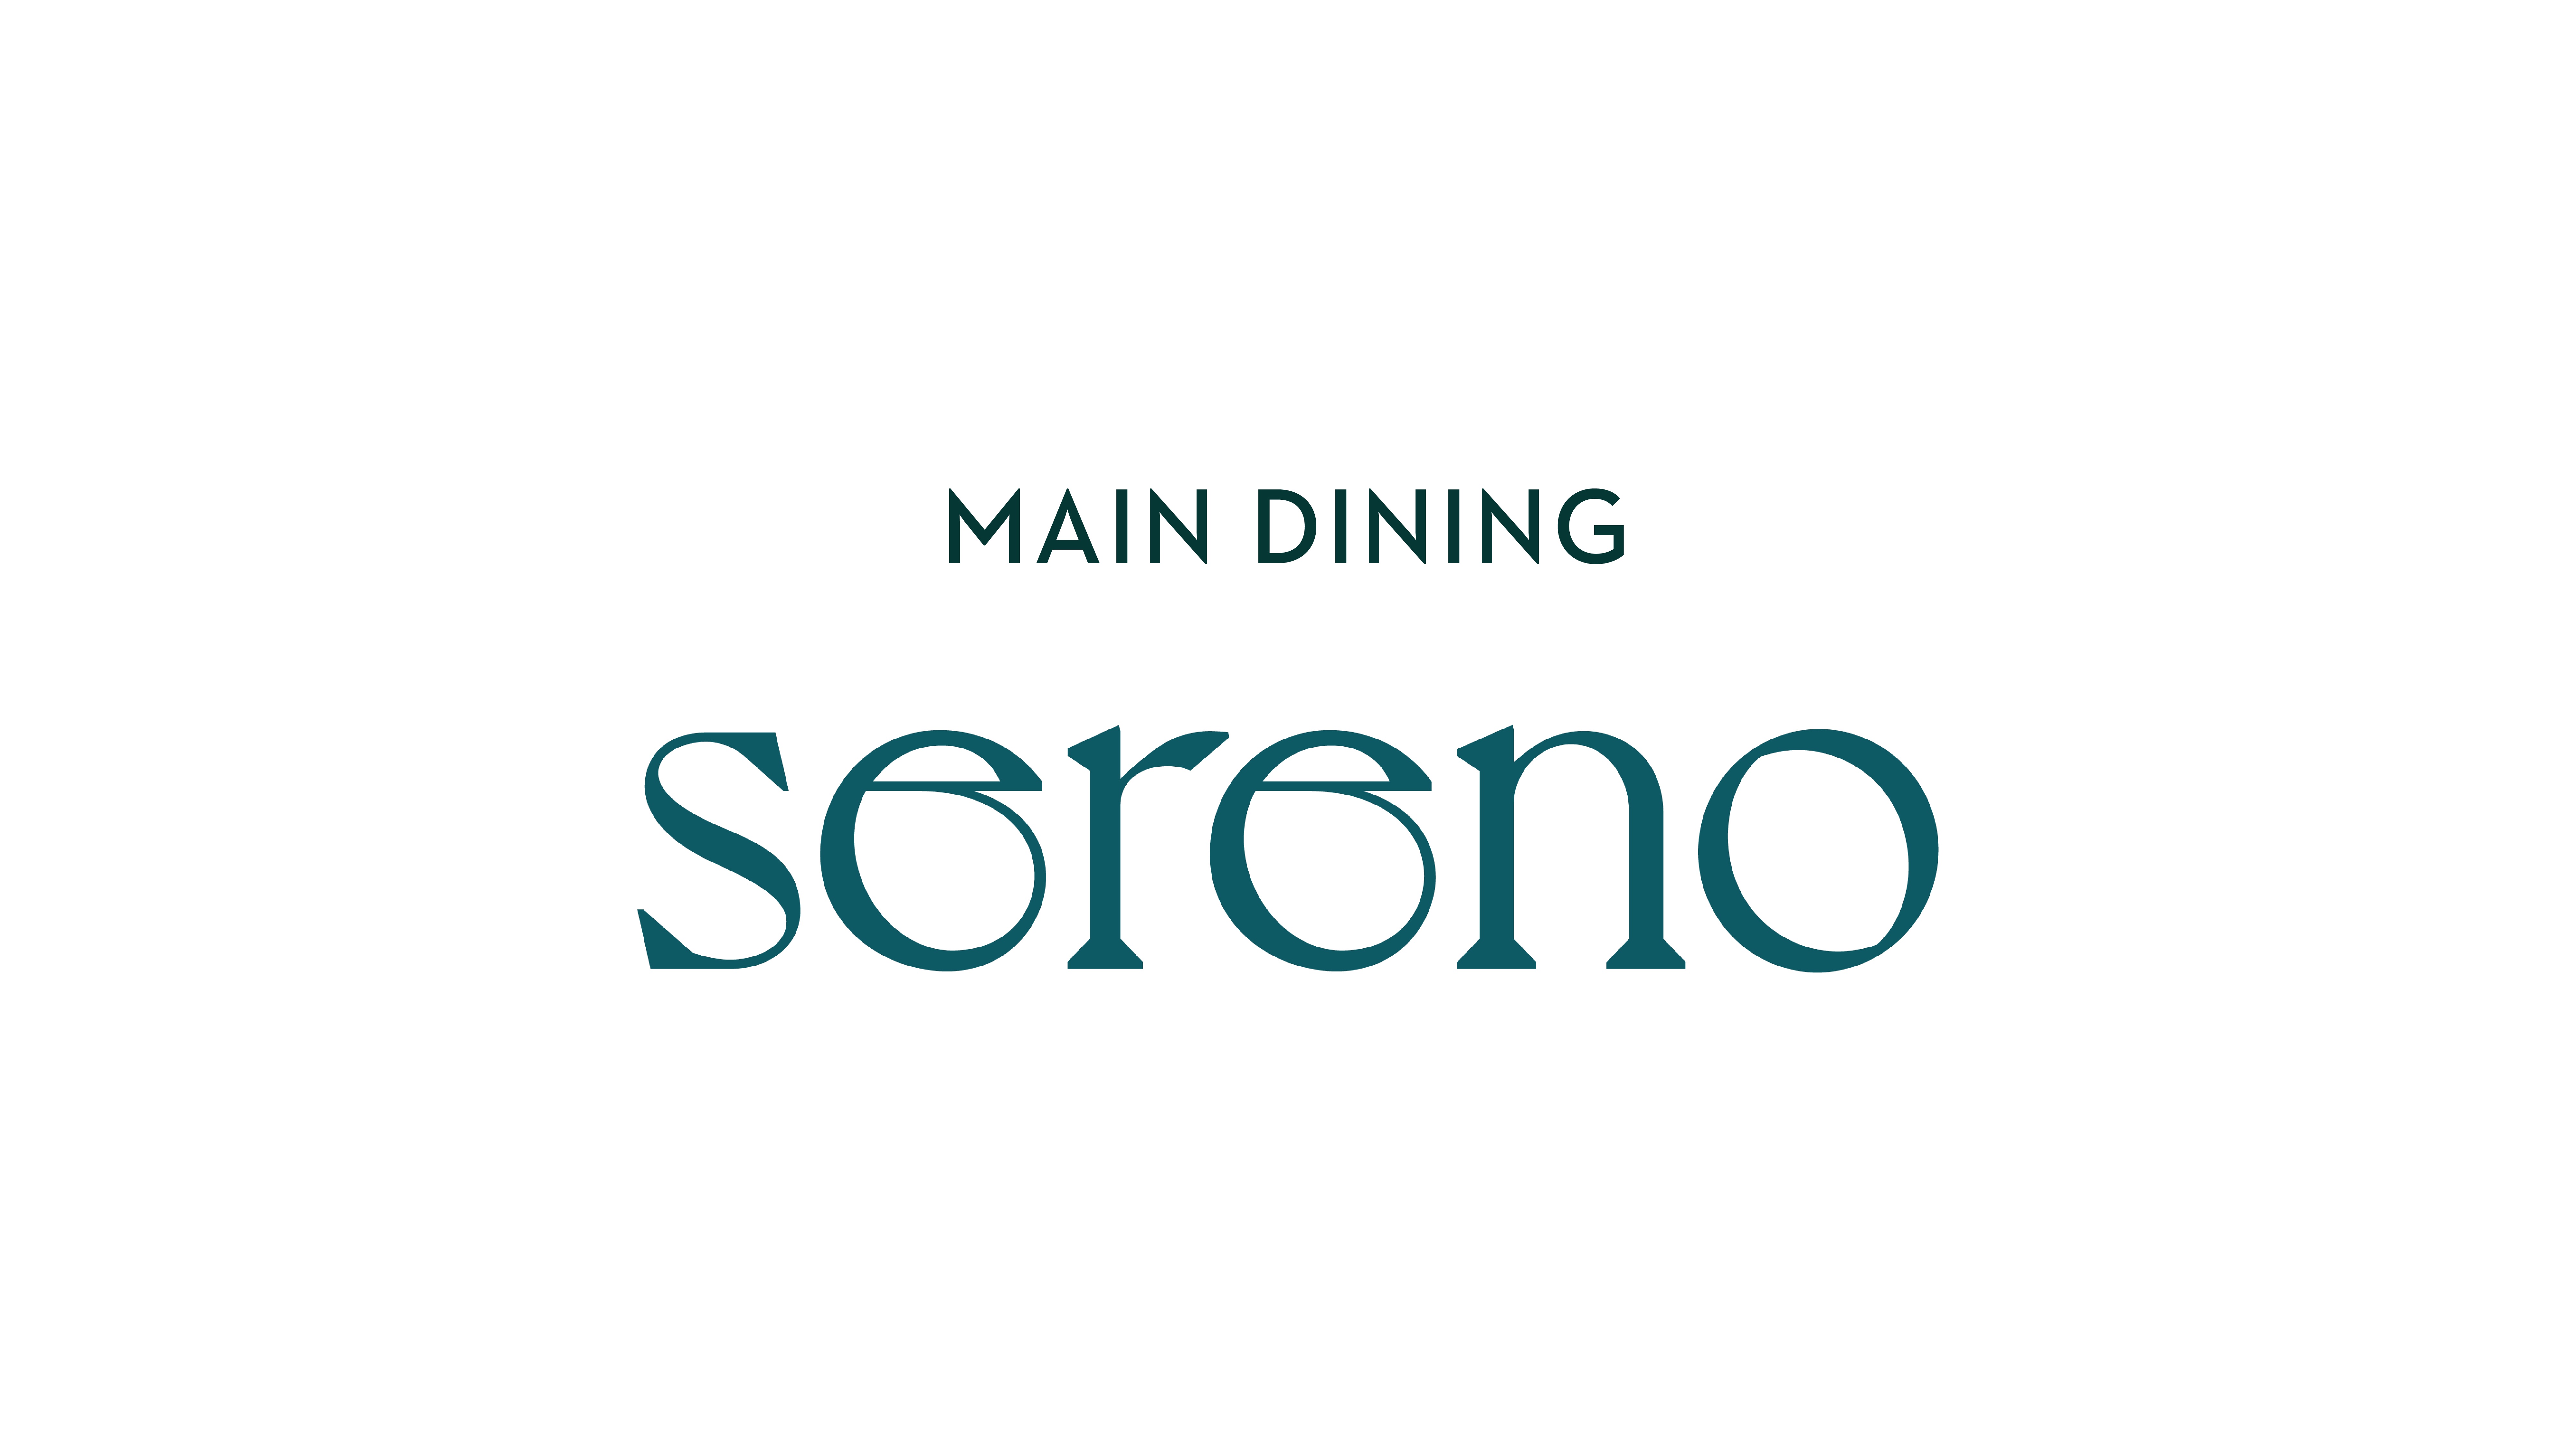 MAIN DINING "sereno" 